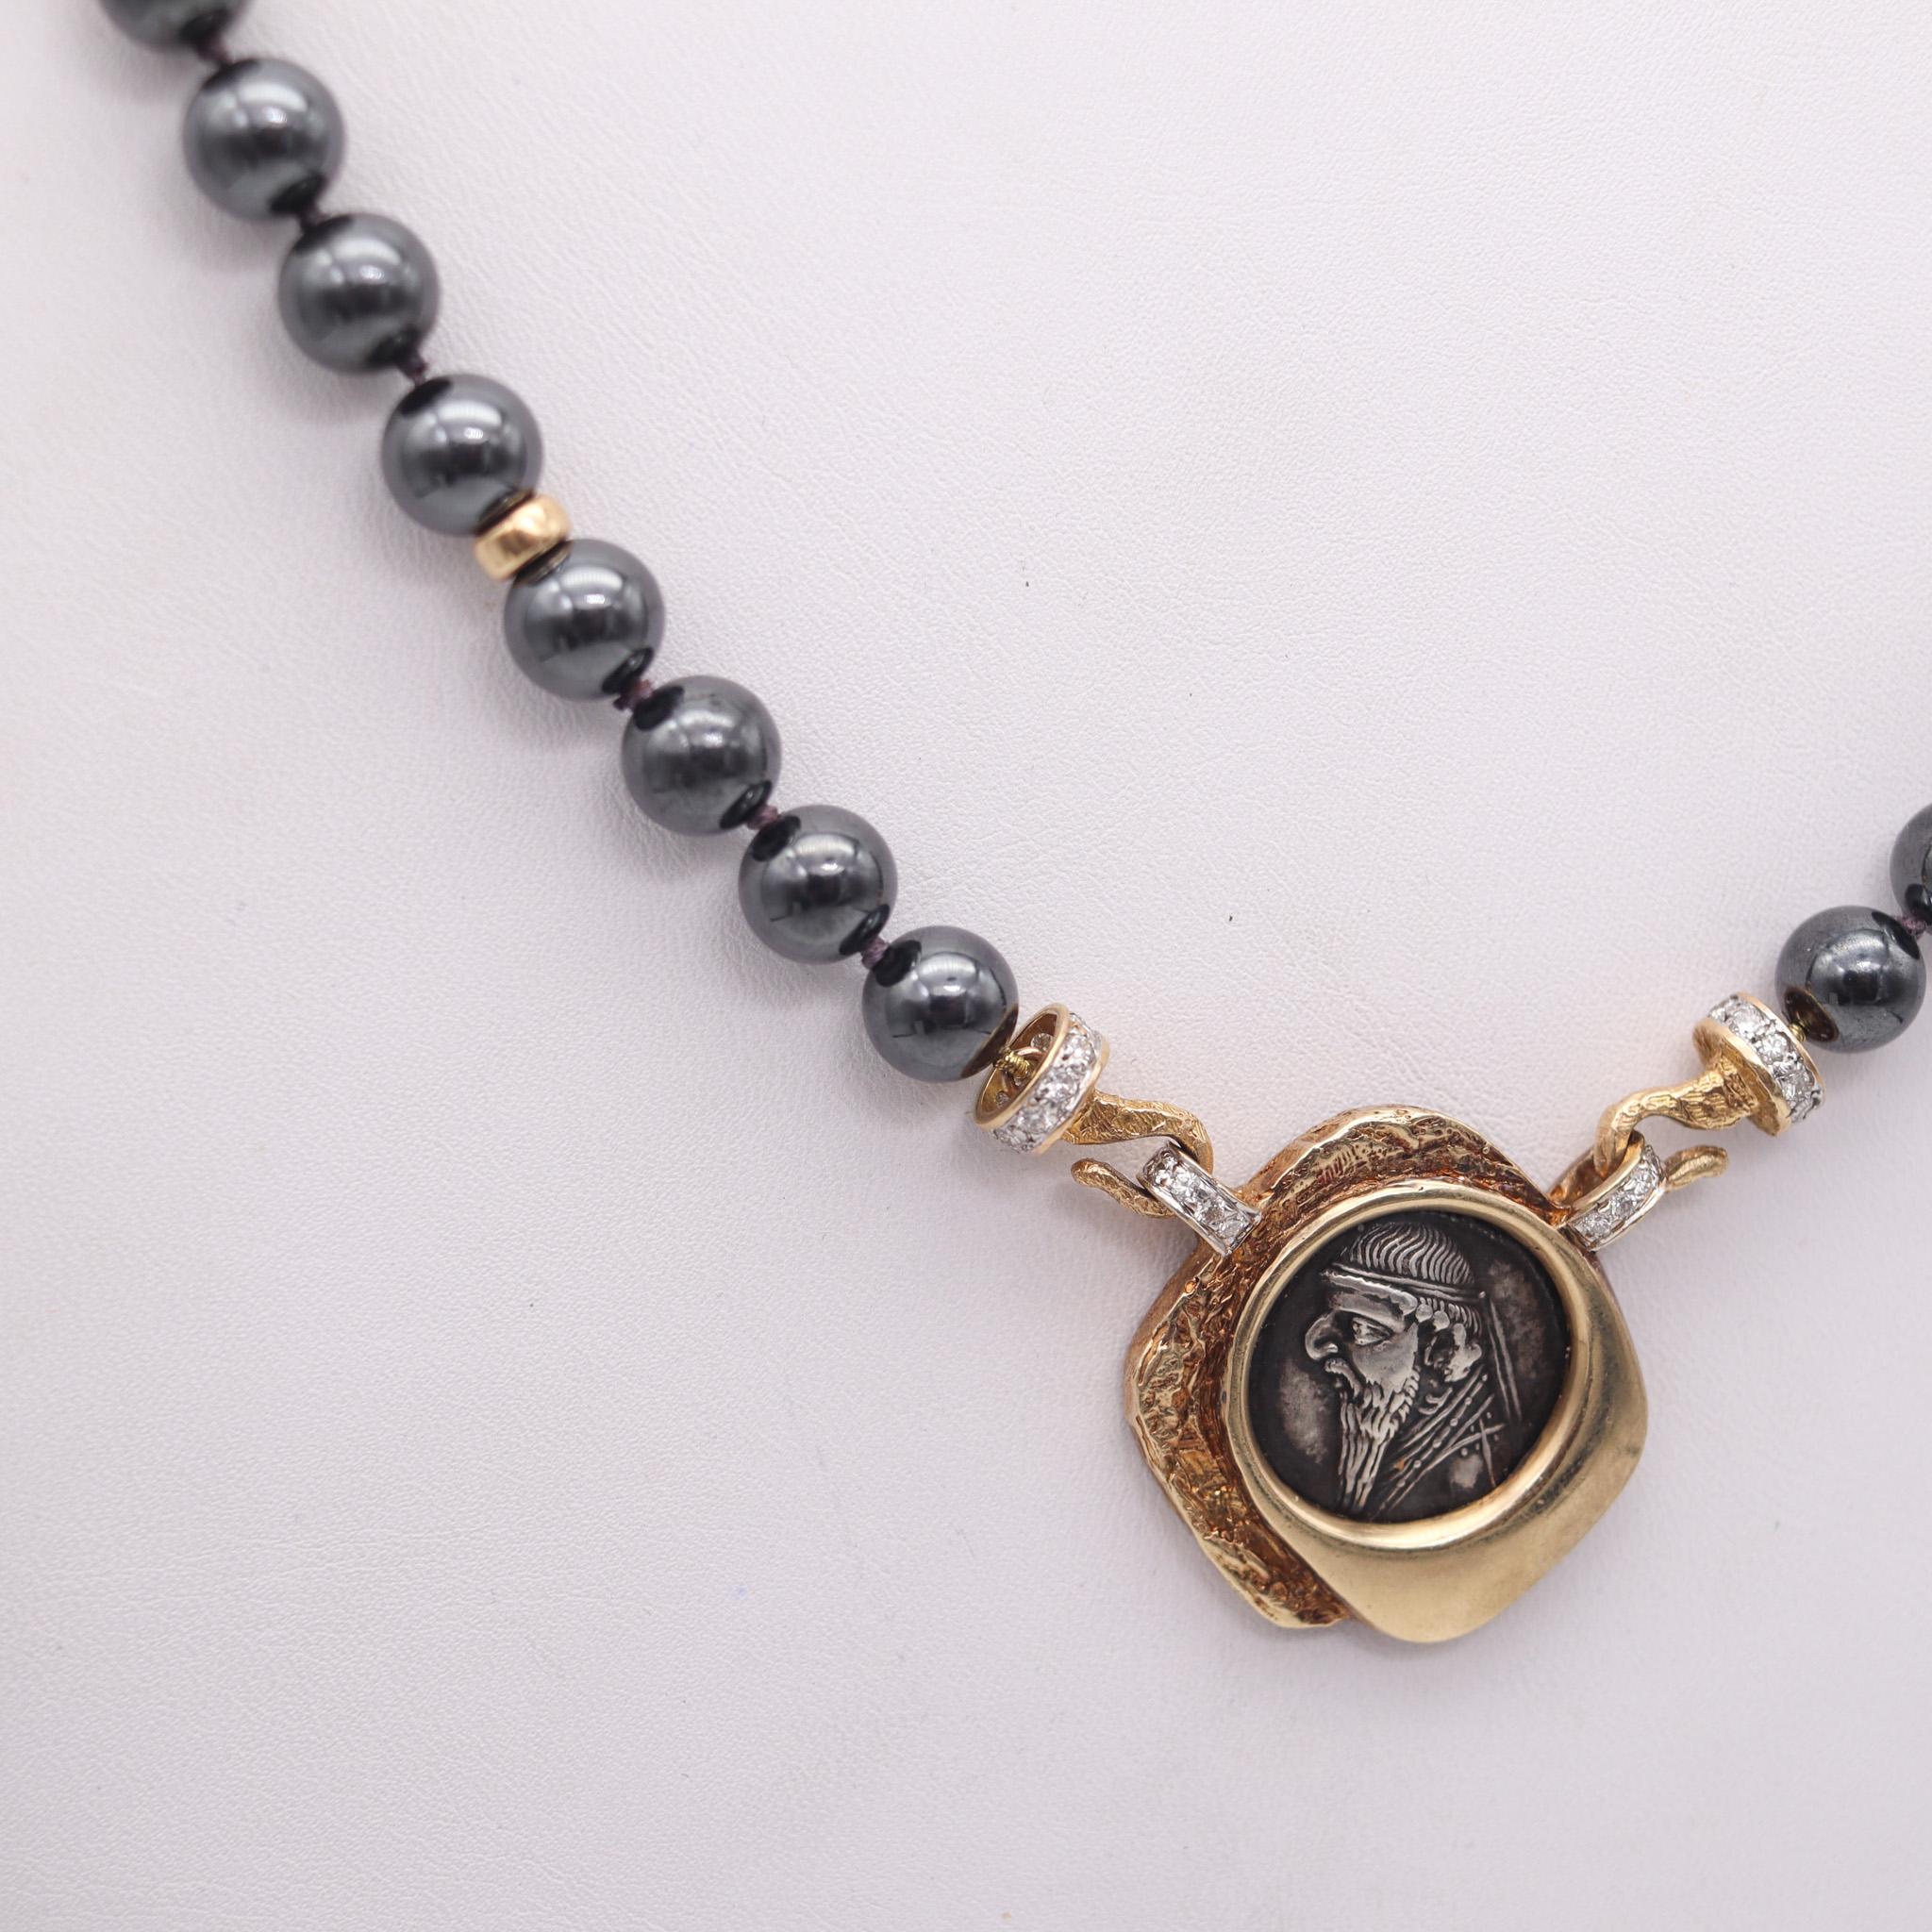 Collier avec une pièce de monnaie antique de 123 av. J.-C. du royaume parthe.

Magnifique collier de pièces de monnaie, monté avec une pièce d'argent véritable du royaume parthe. Il s'agit d'un drachme en argent de 19,5 mm datant de la période du